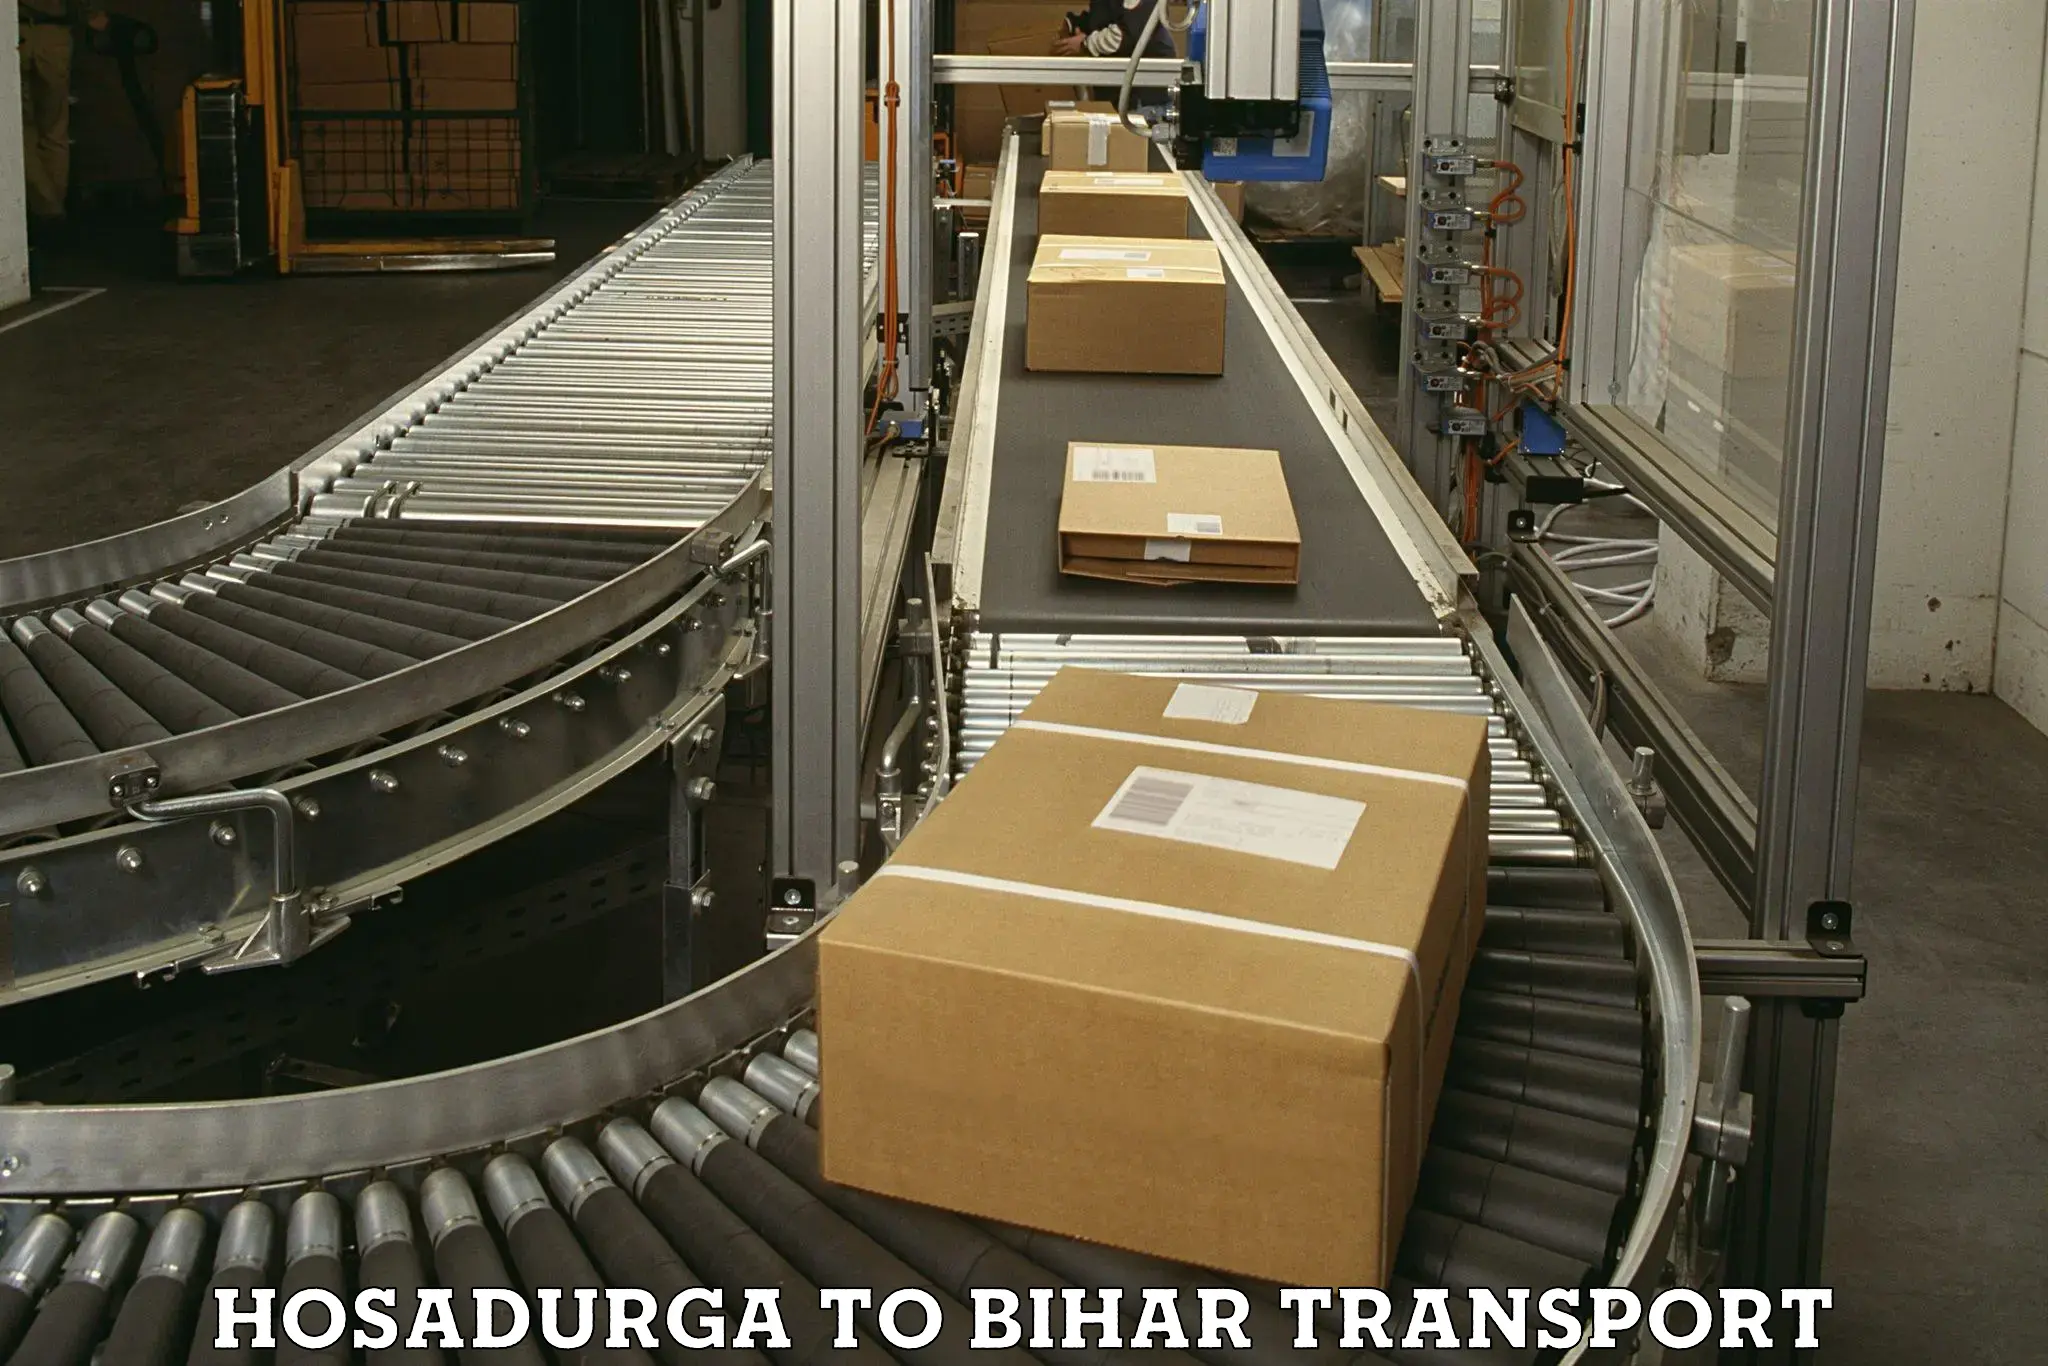 Express transport services Hosadurga to Bihar